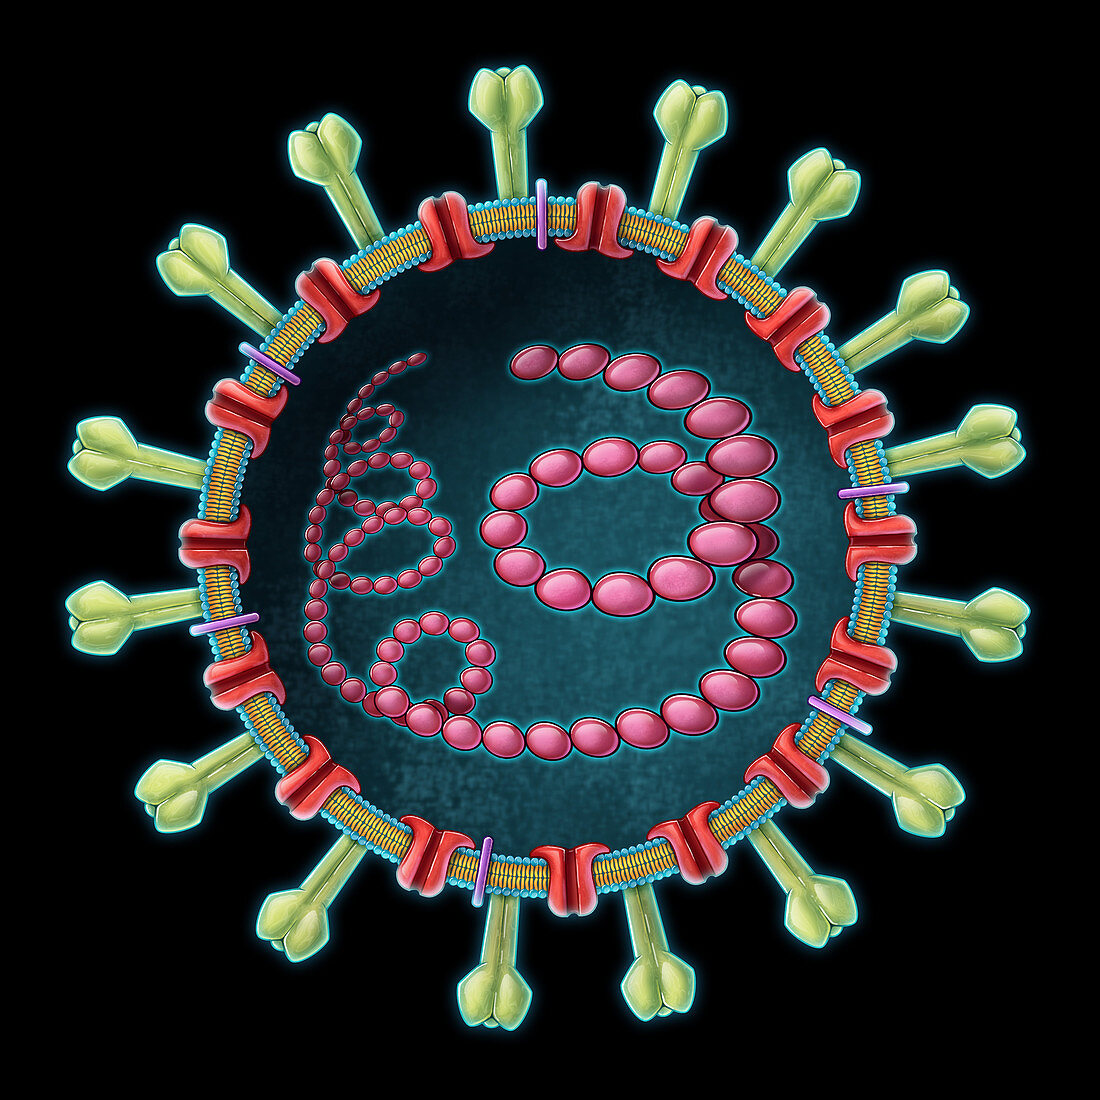 MERS Coronavirus, Illustration